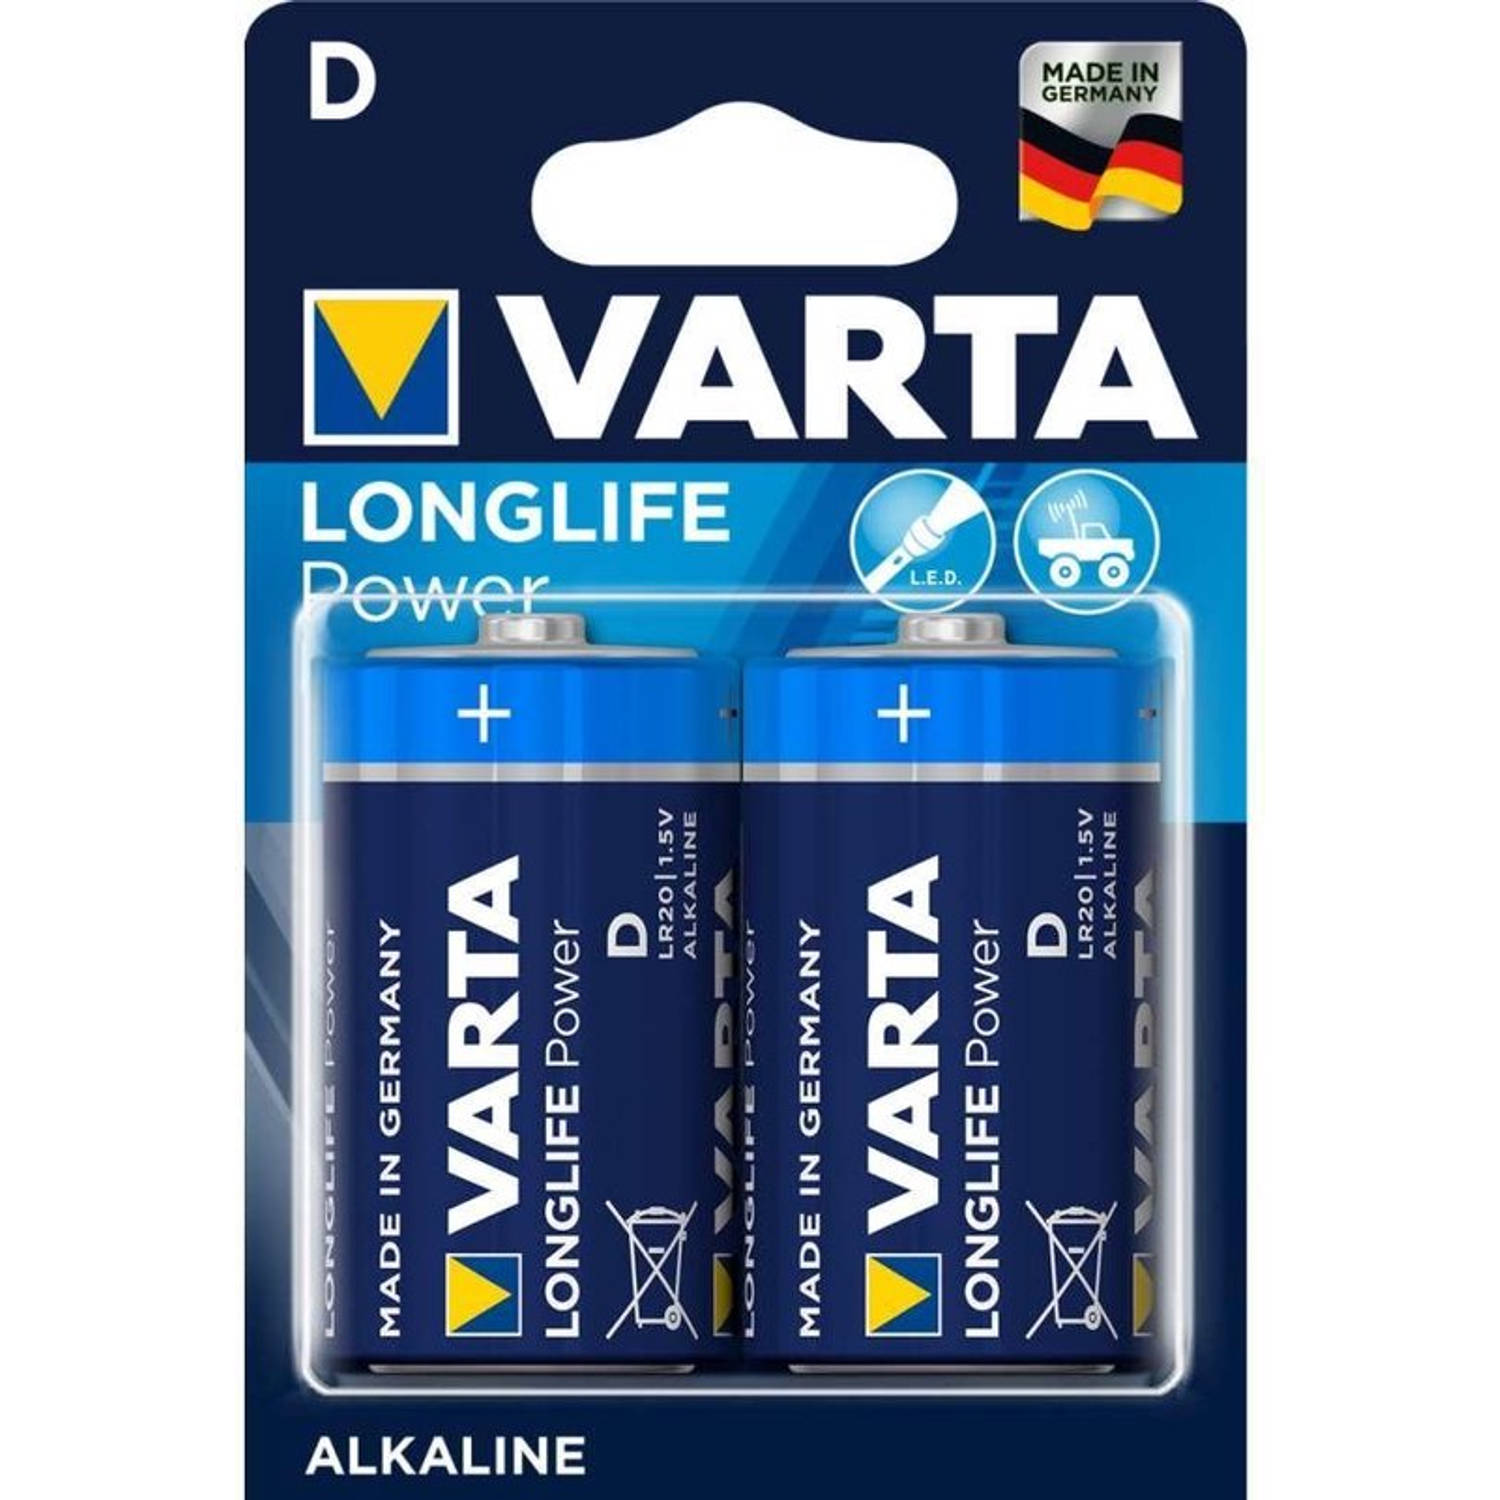 Varta Longlife Power 2x D-cell Alkaline